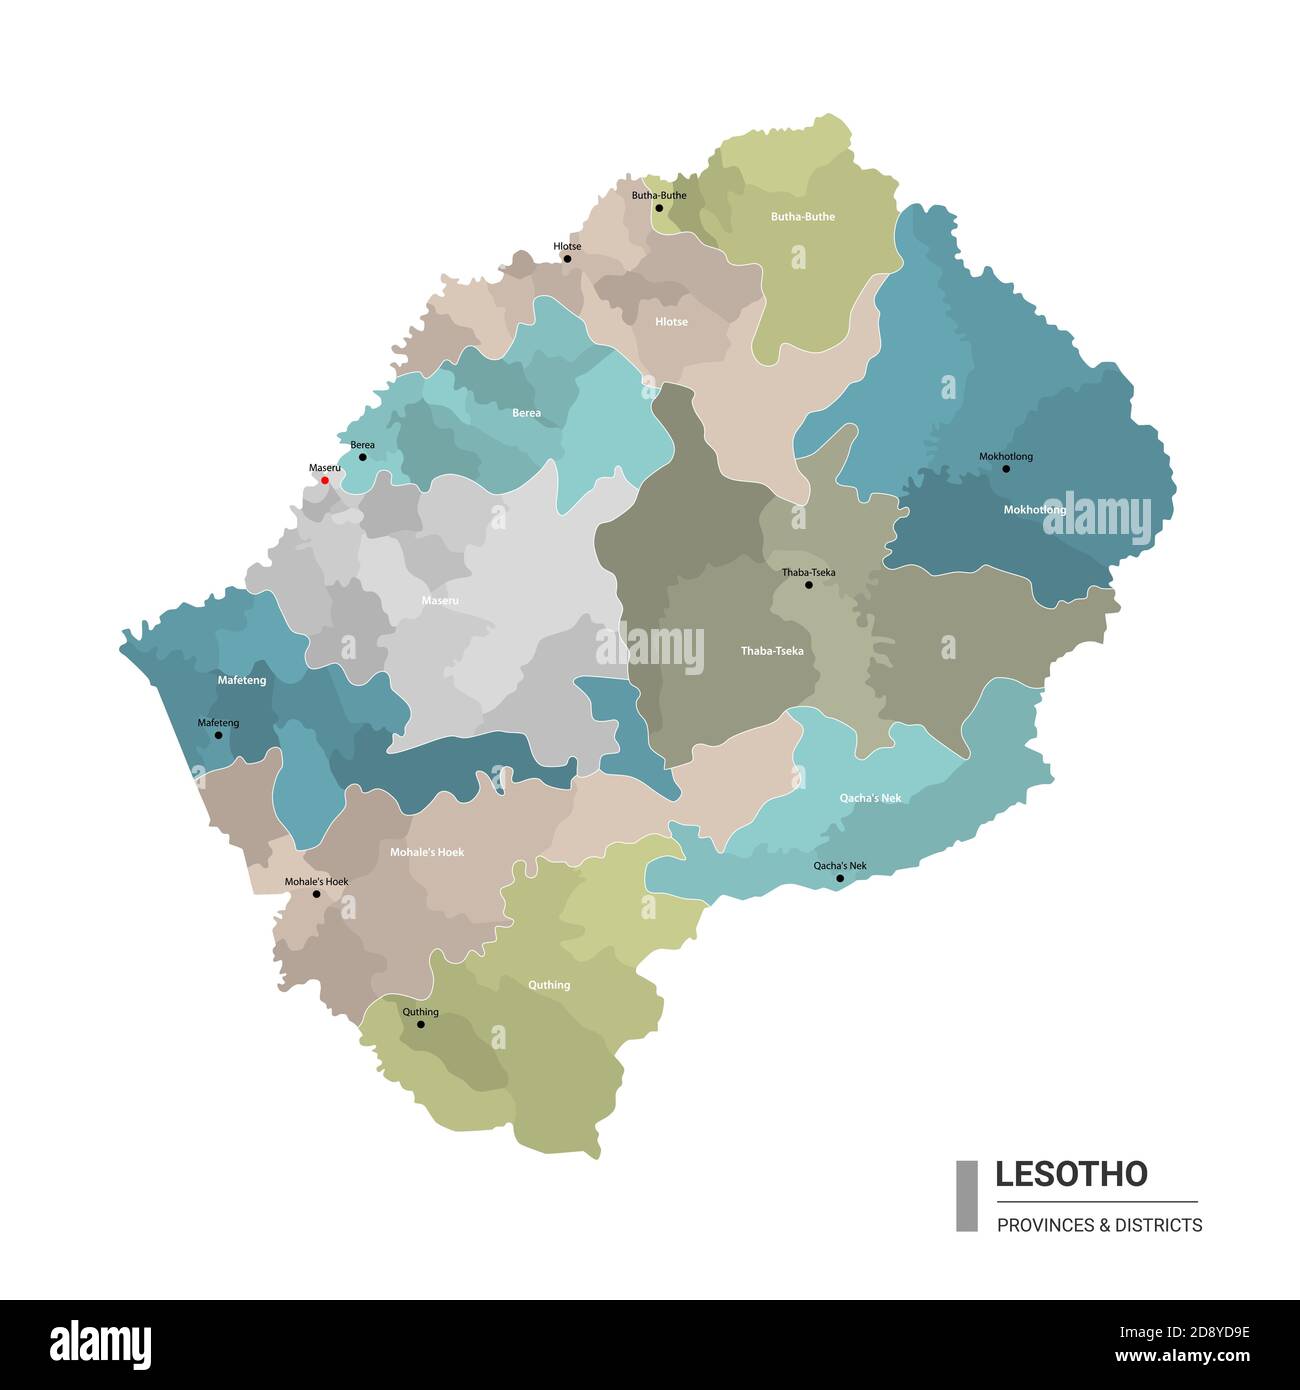 Lesotho higt mapa detallado con subdivisiones. Mapa administrativo de Lesotho con el nombre de los distritos y ciudades, coloreado por los estados y el distrito administrativo Ilustración del Vector